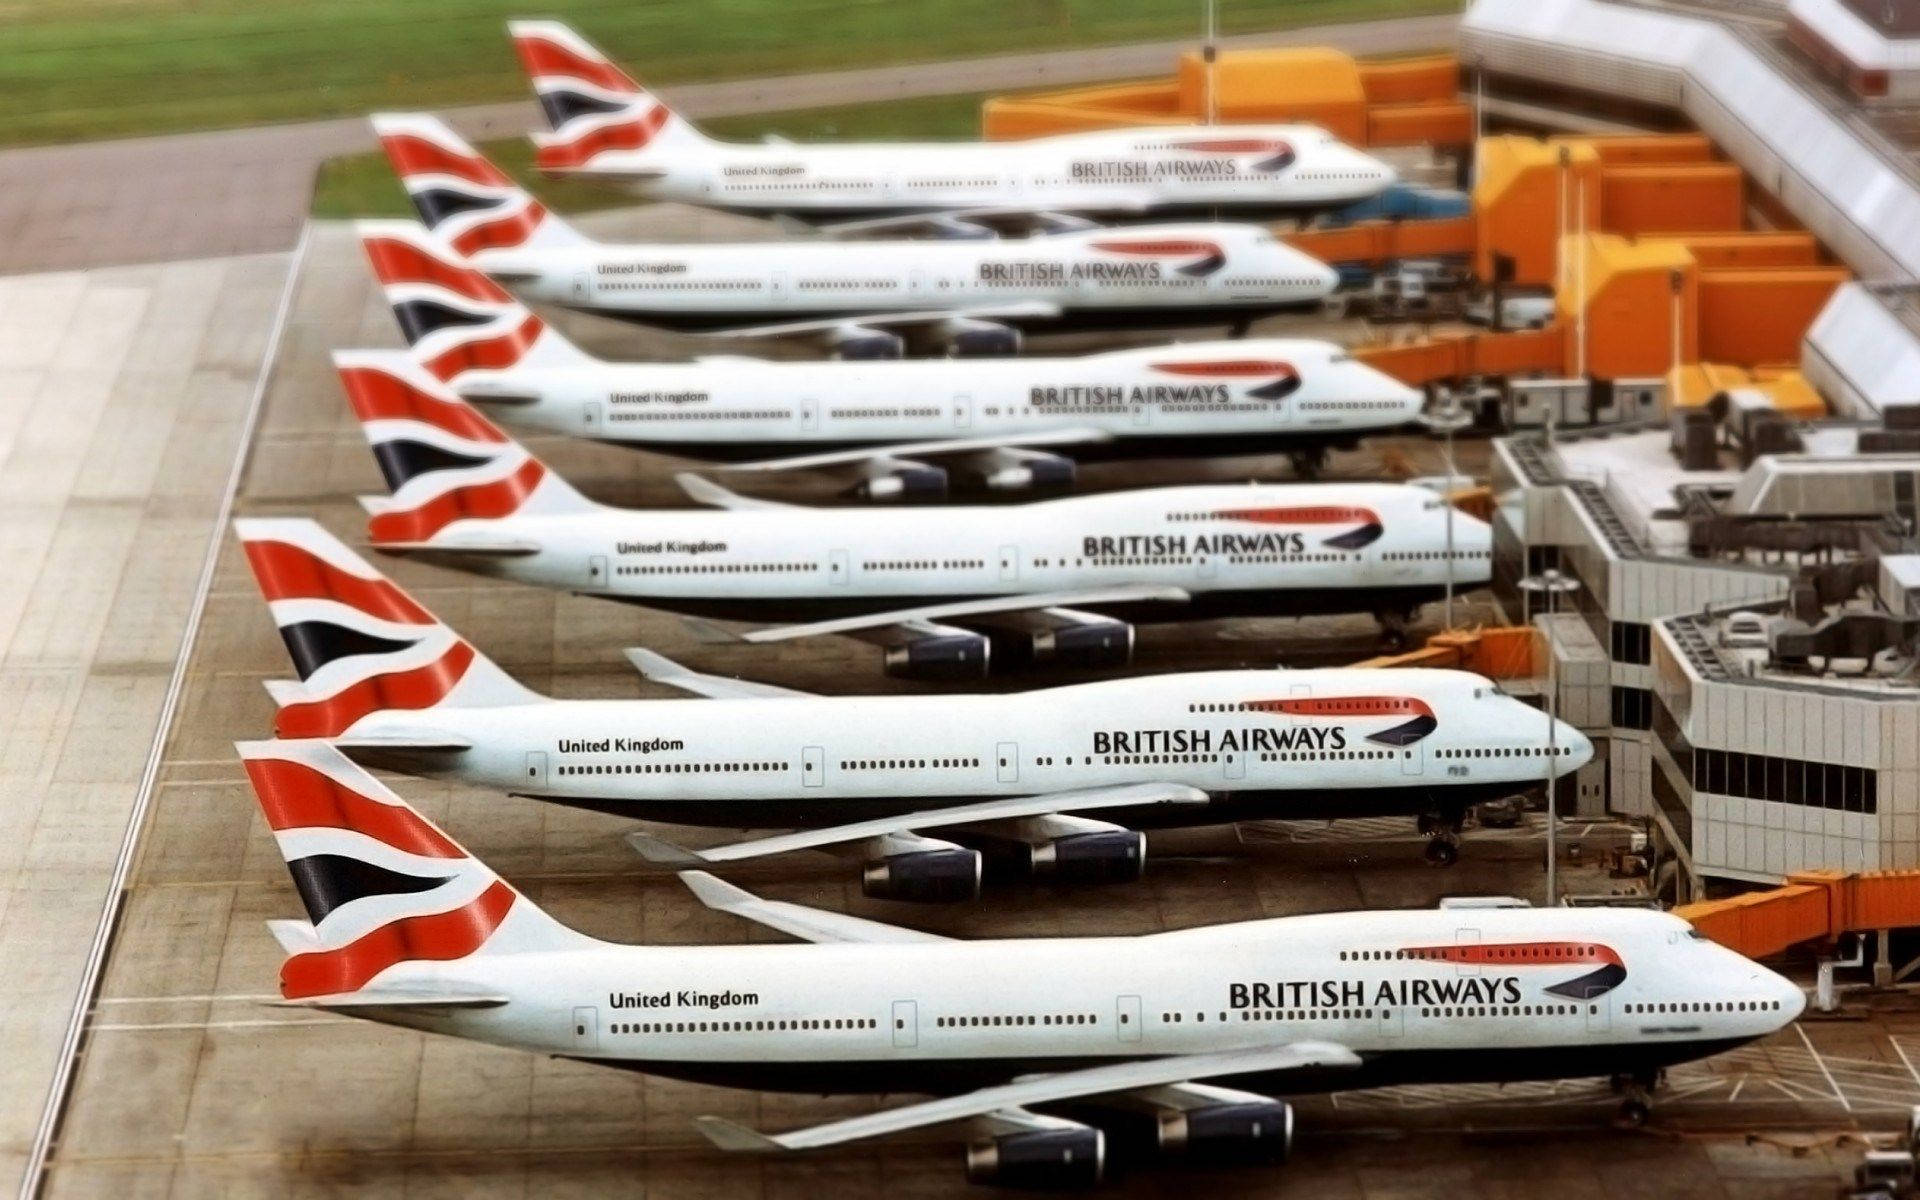 Geparkteboeing-flugzeuge Von British Airways Wallpaper